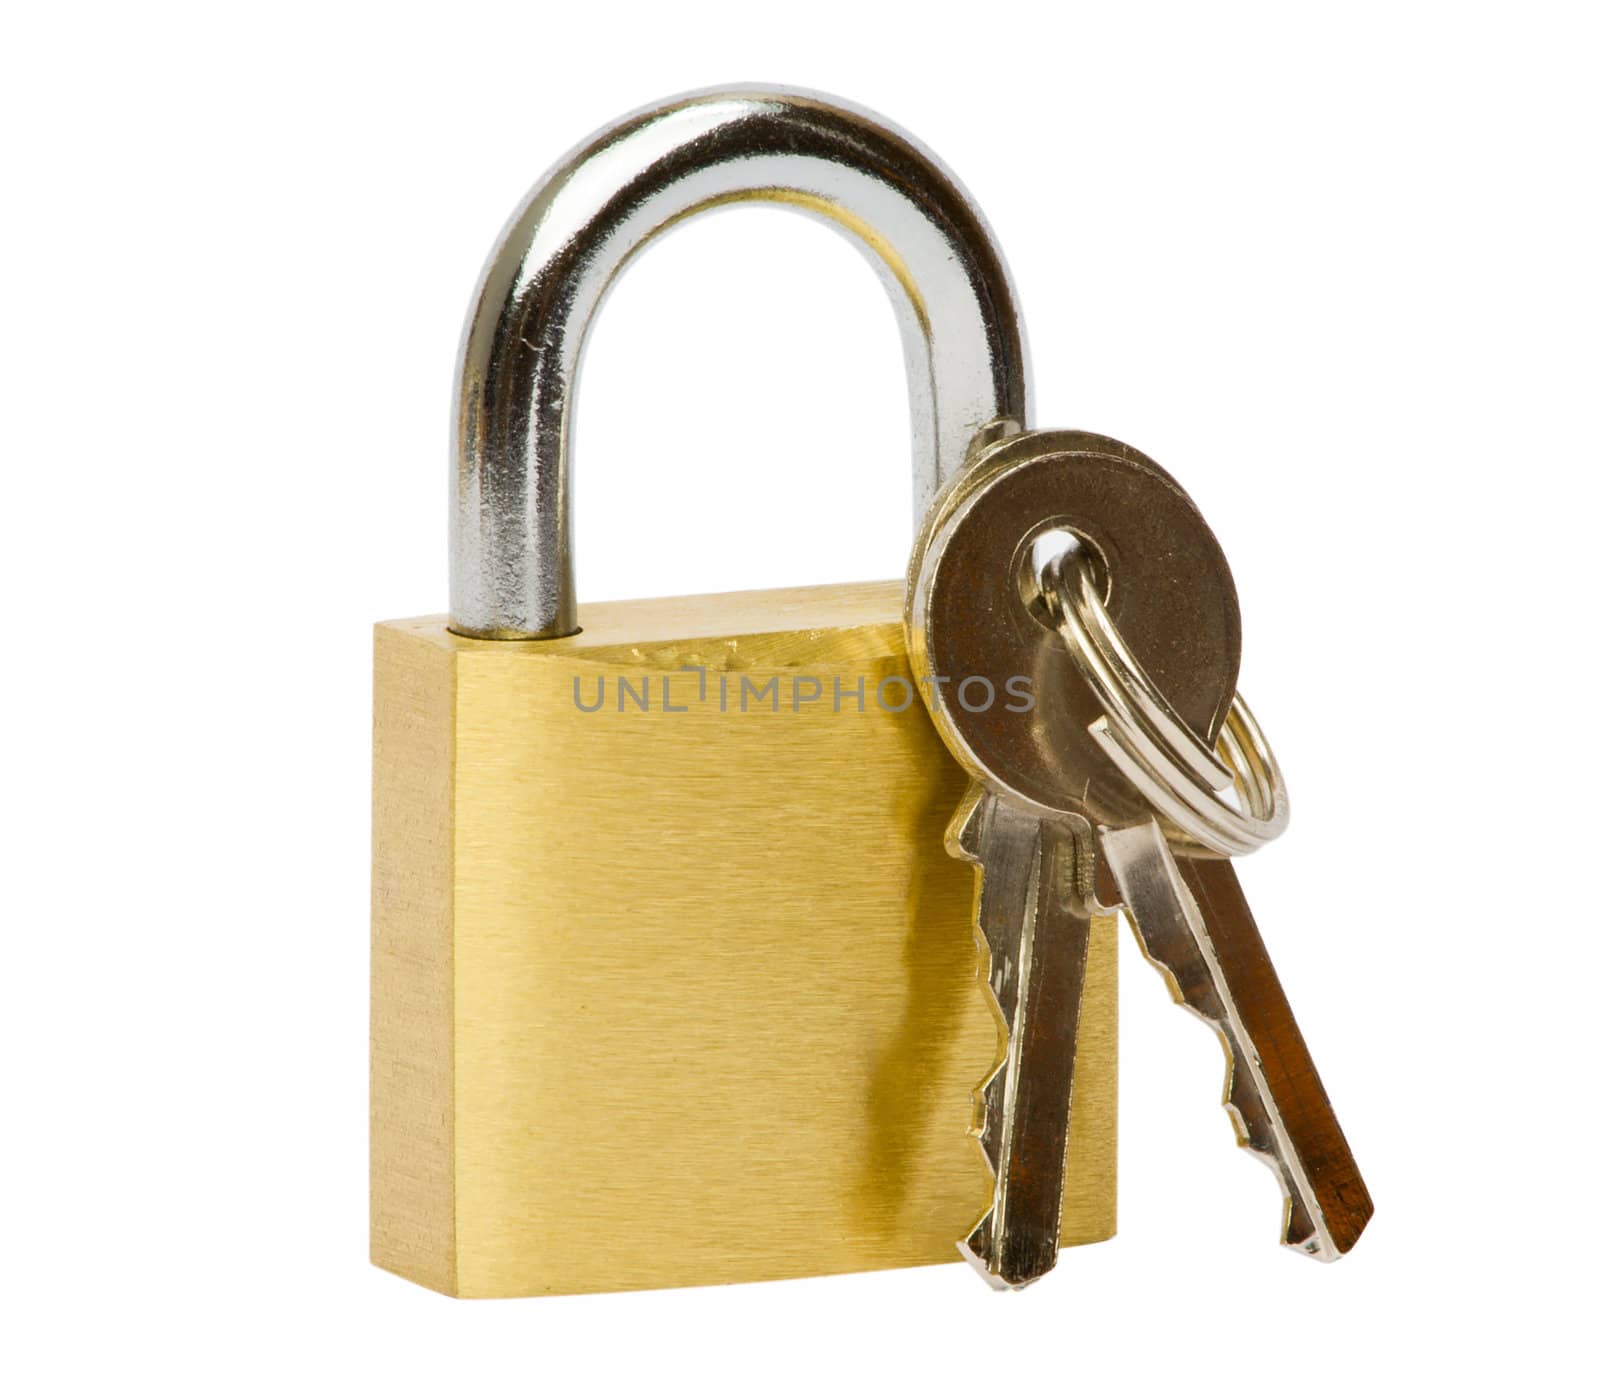 Lock & key
